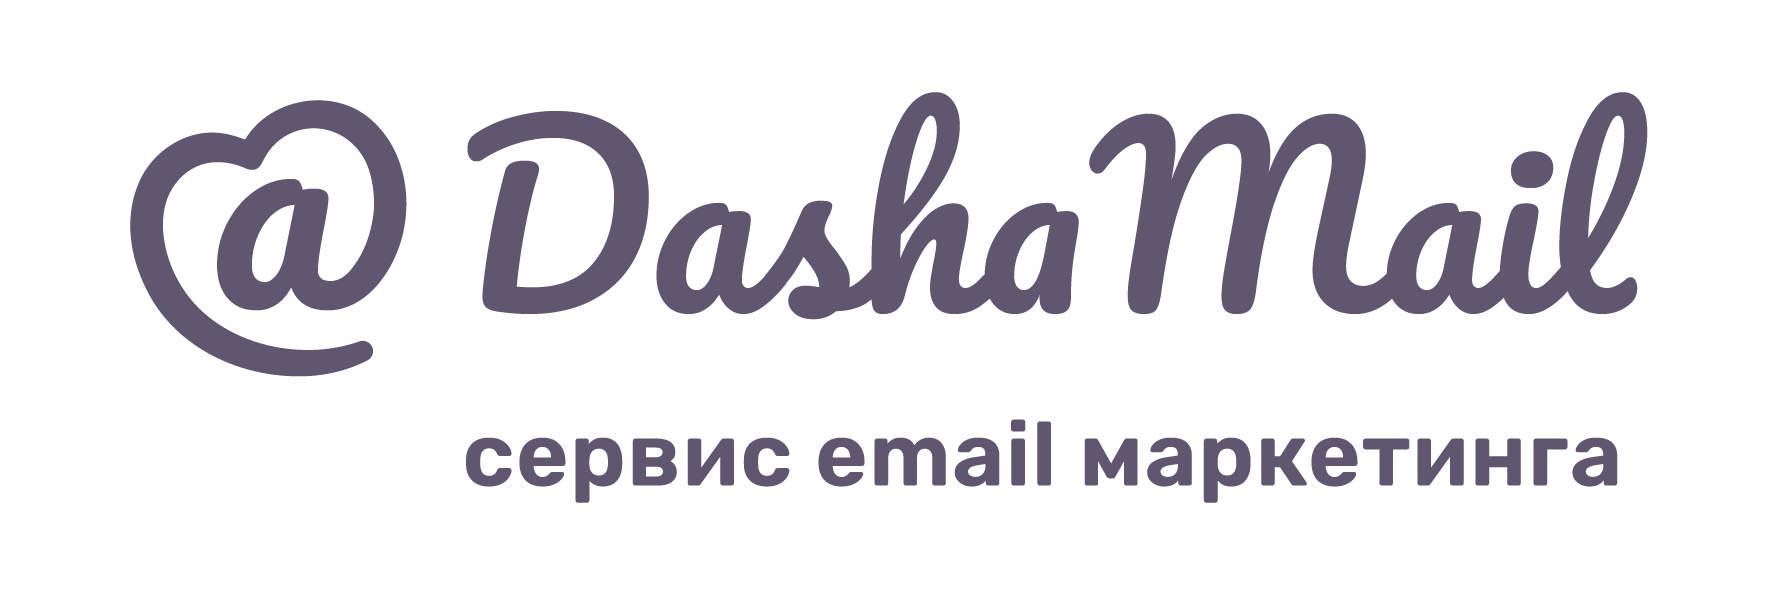 DashaMail